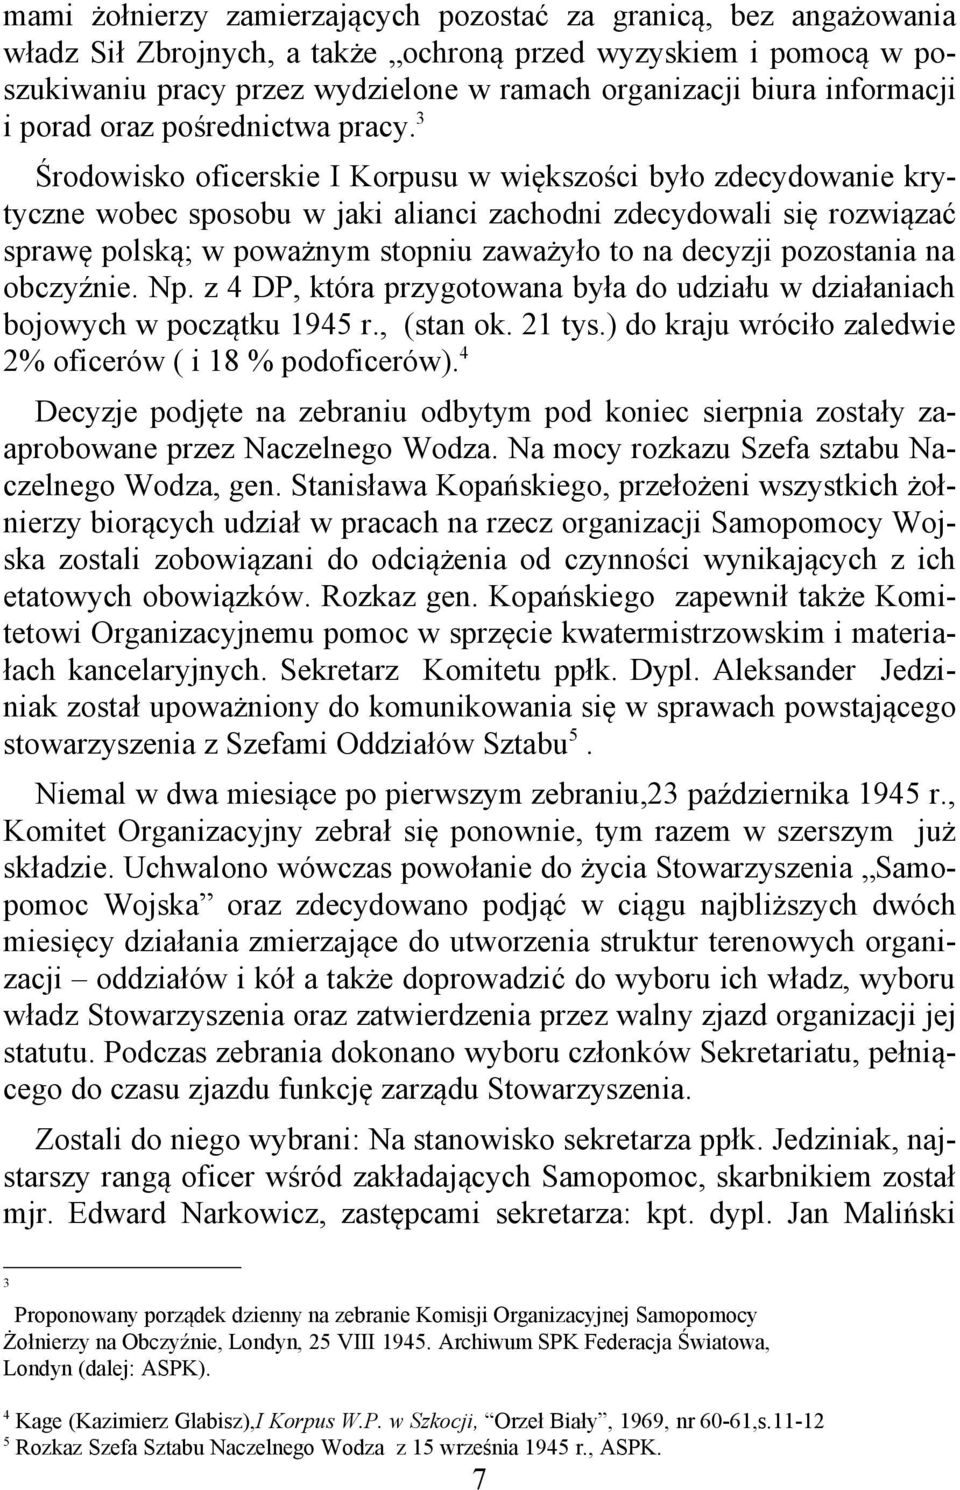 3 Środowisko oficerskie I Korpusu w większości było zdecydowanie krytyczne wobec sposobu w jaki alianci zachodni zdecydowali się rozwiązać sprawę polską; w poważnym stopniu zaważyło to na decyzji